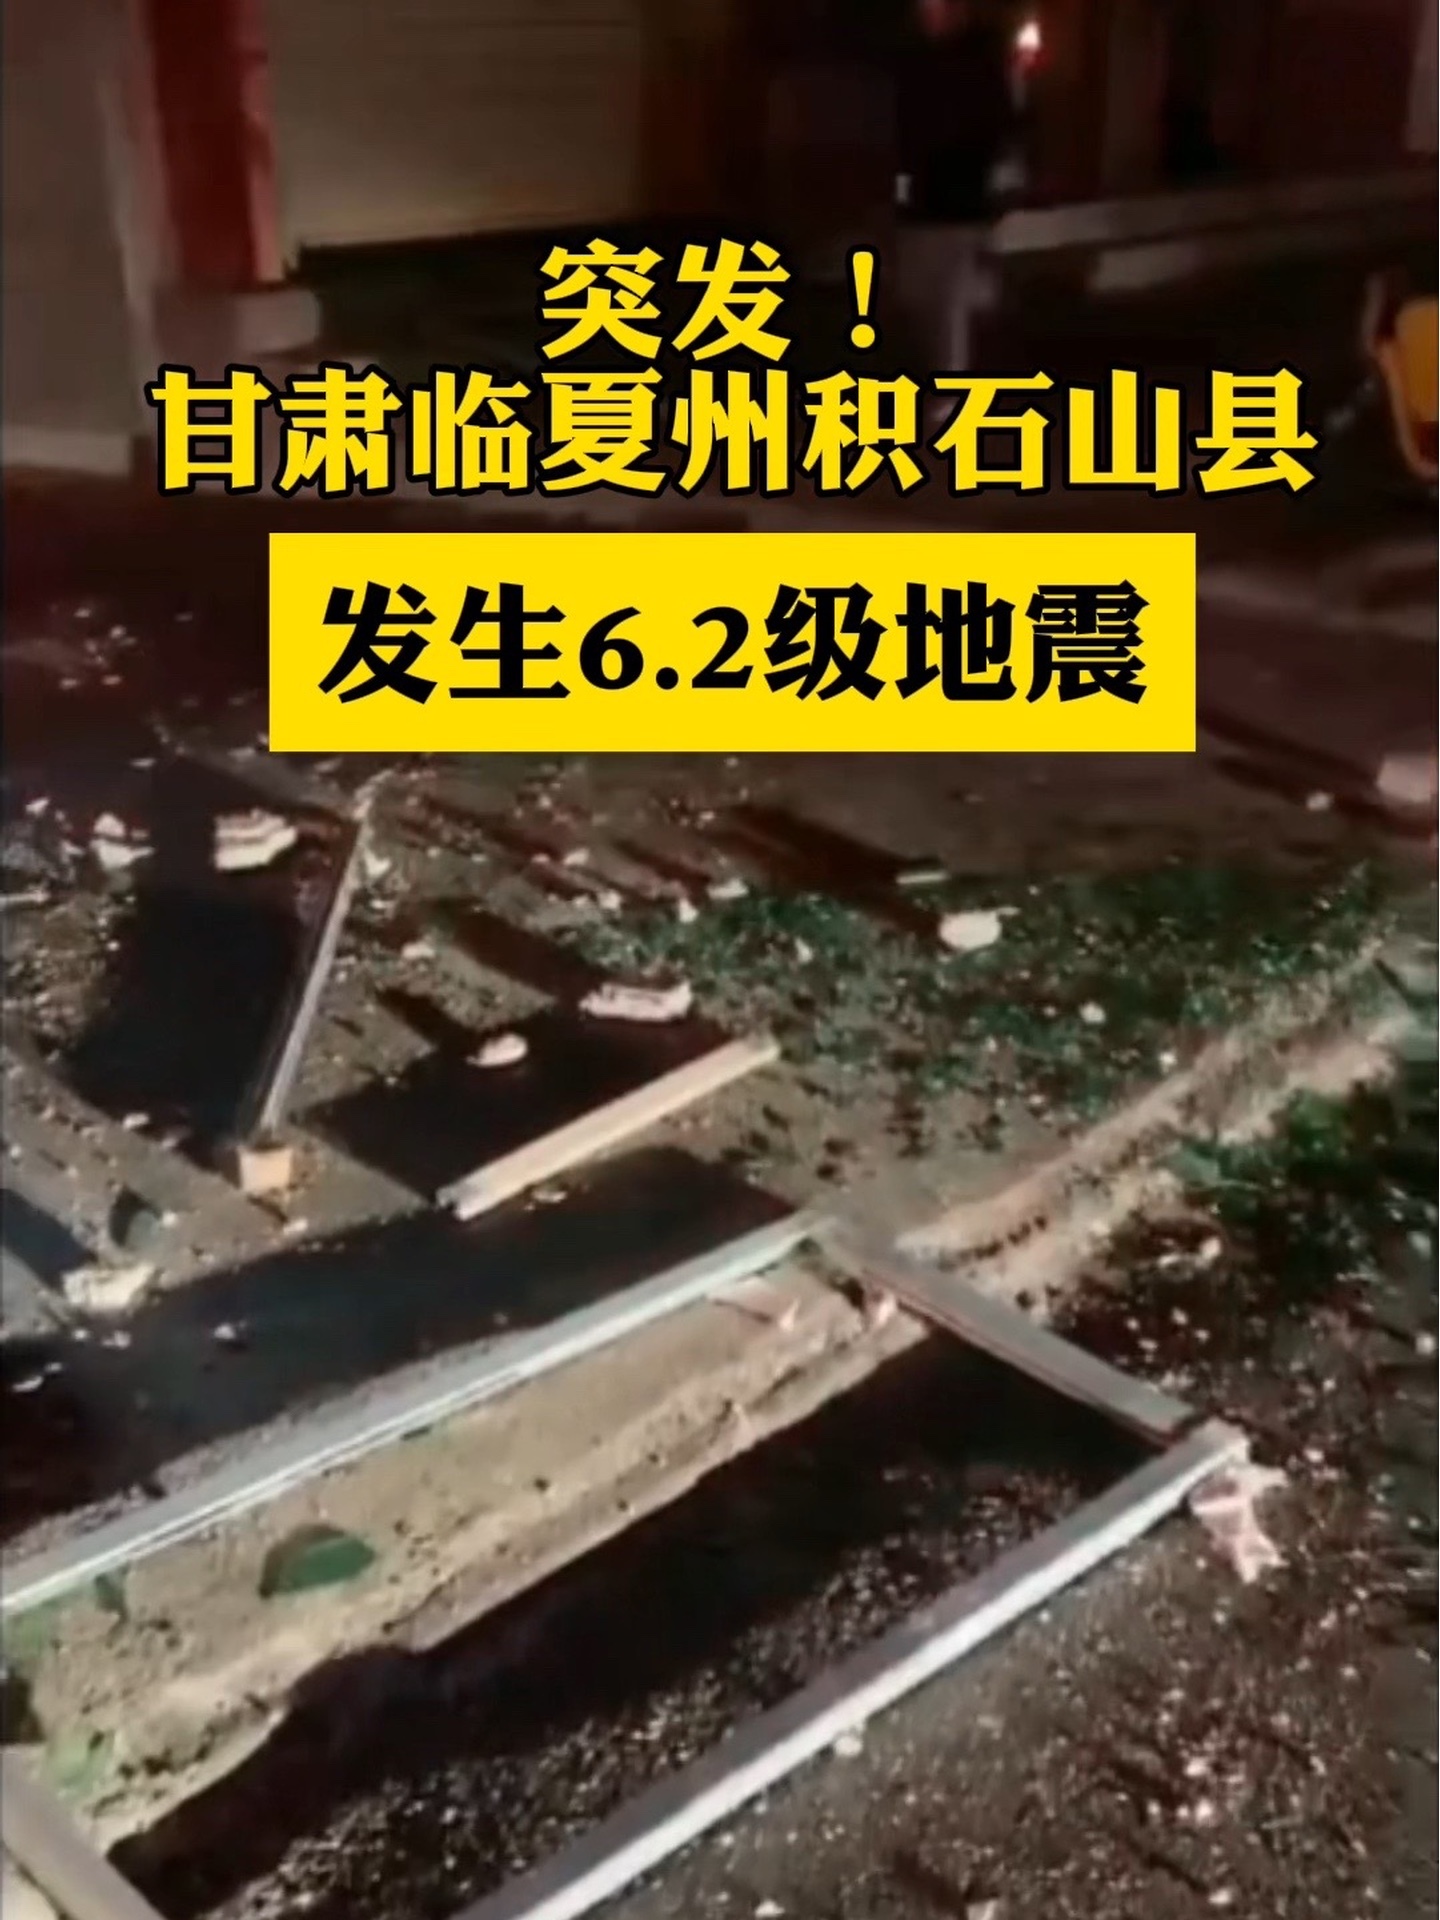 甘肃临夏州积石山县发生6.2级地震#热点知多少